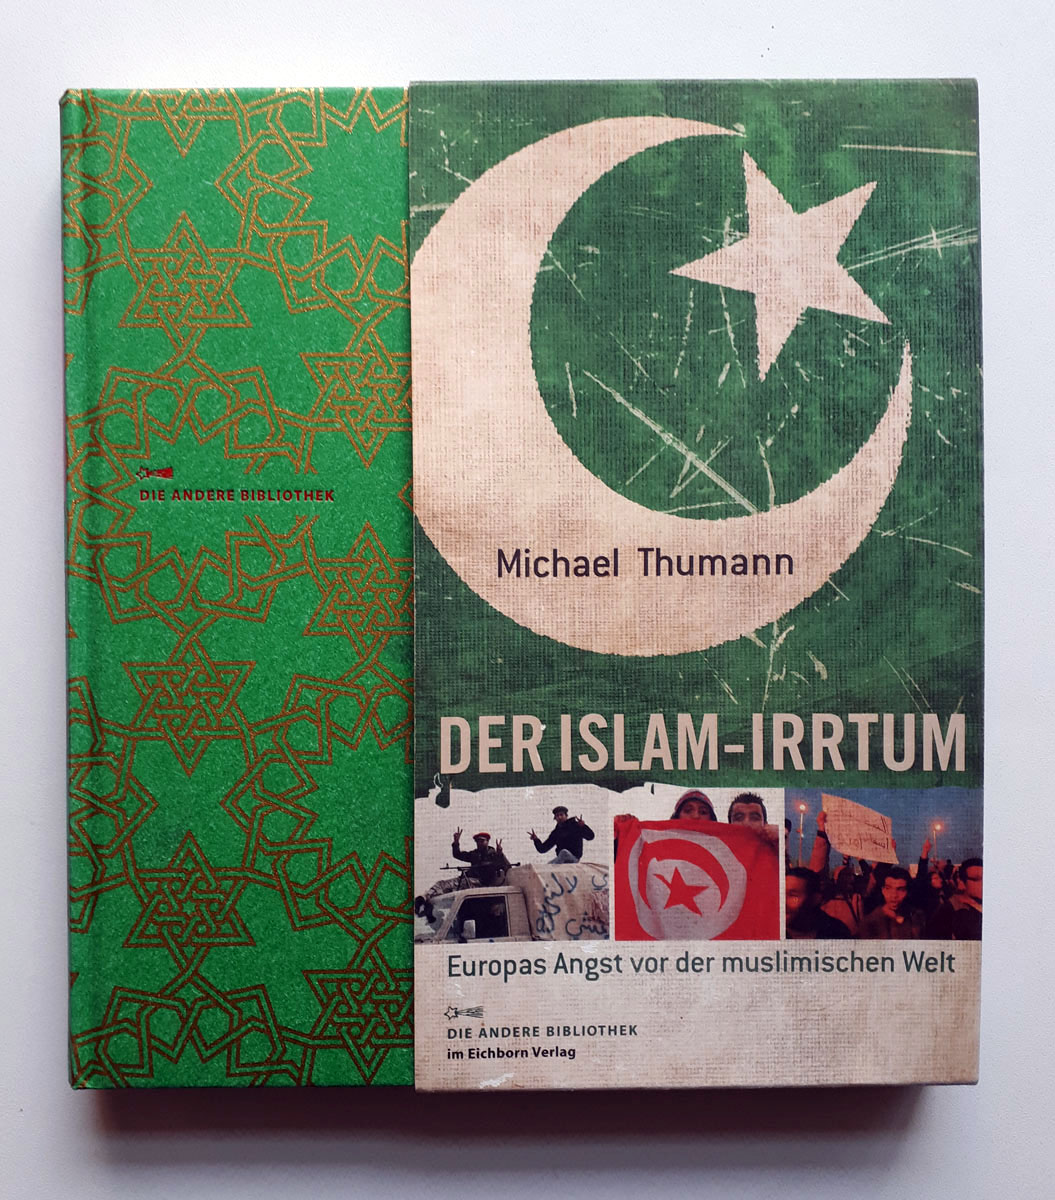 Der Islam-Irrtum - Europas Angst vor der muslimischen Welt - Die andere Bibliothek - Michael Thumann